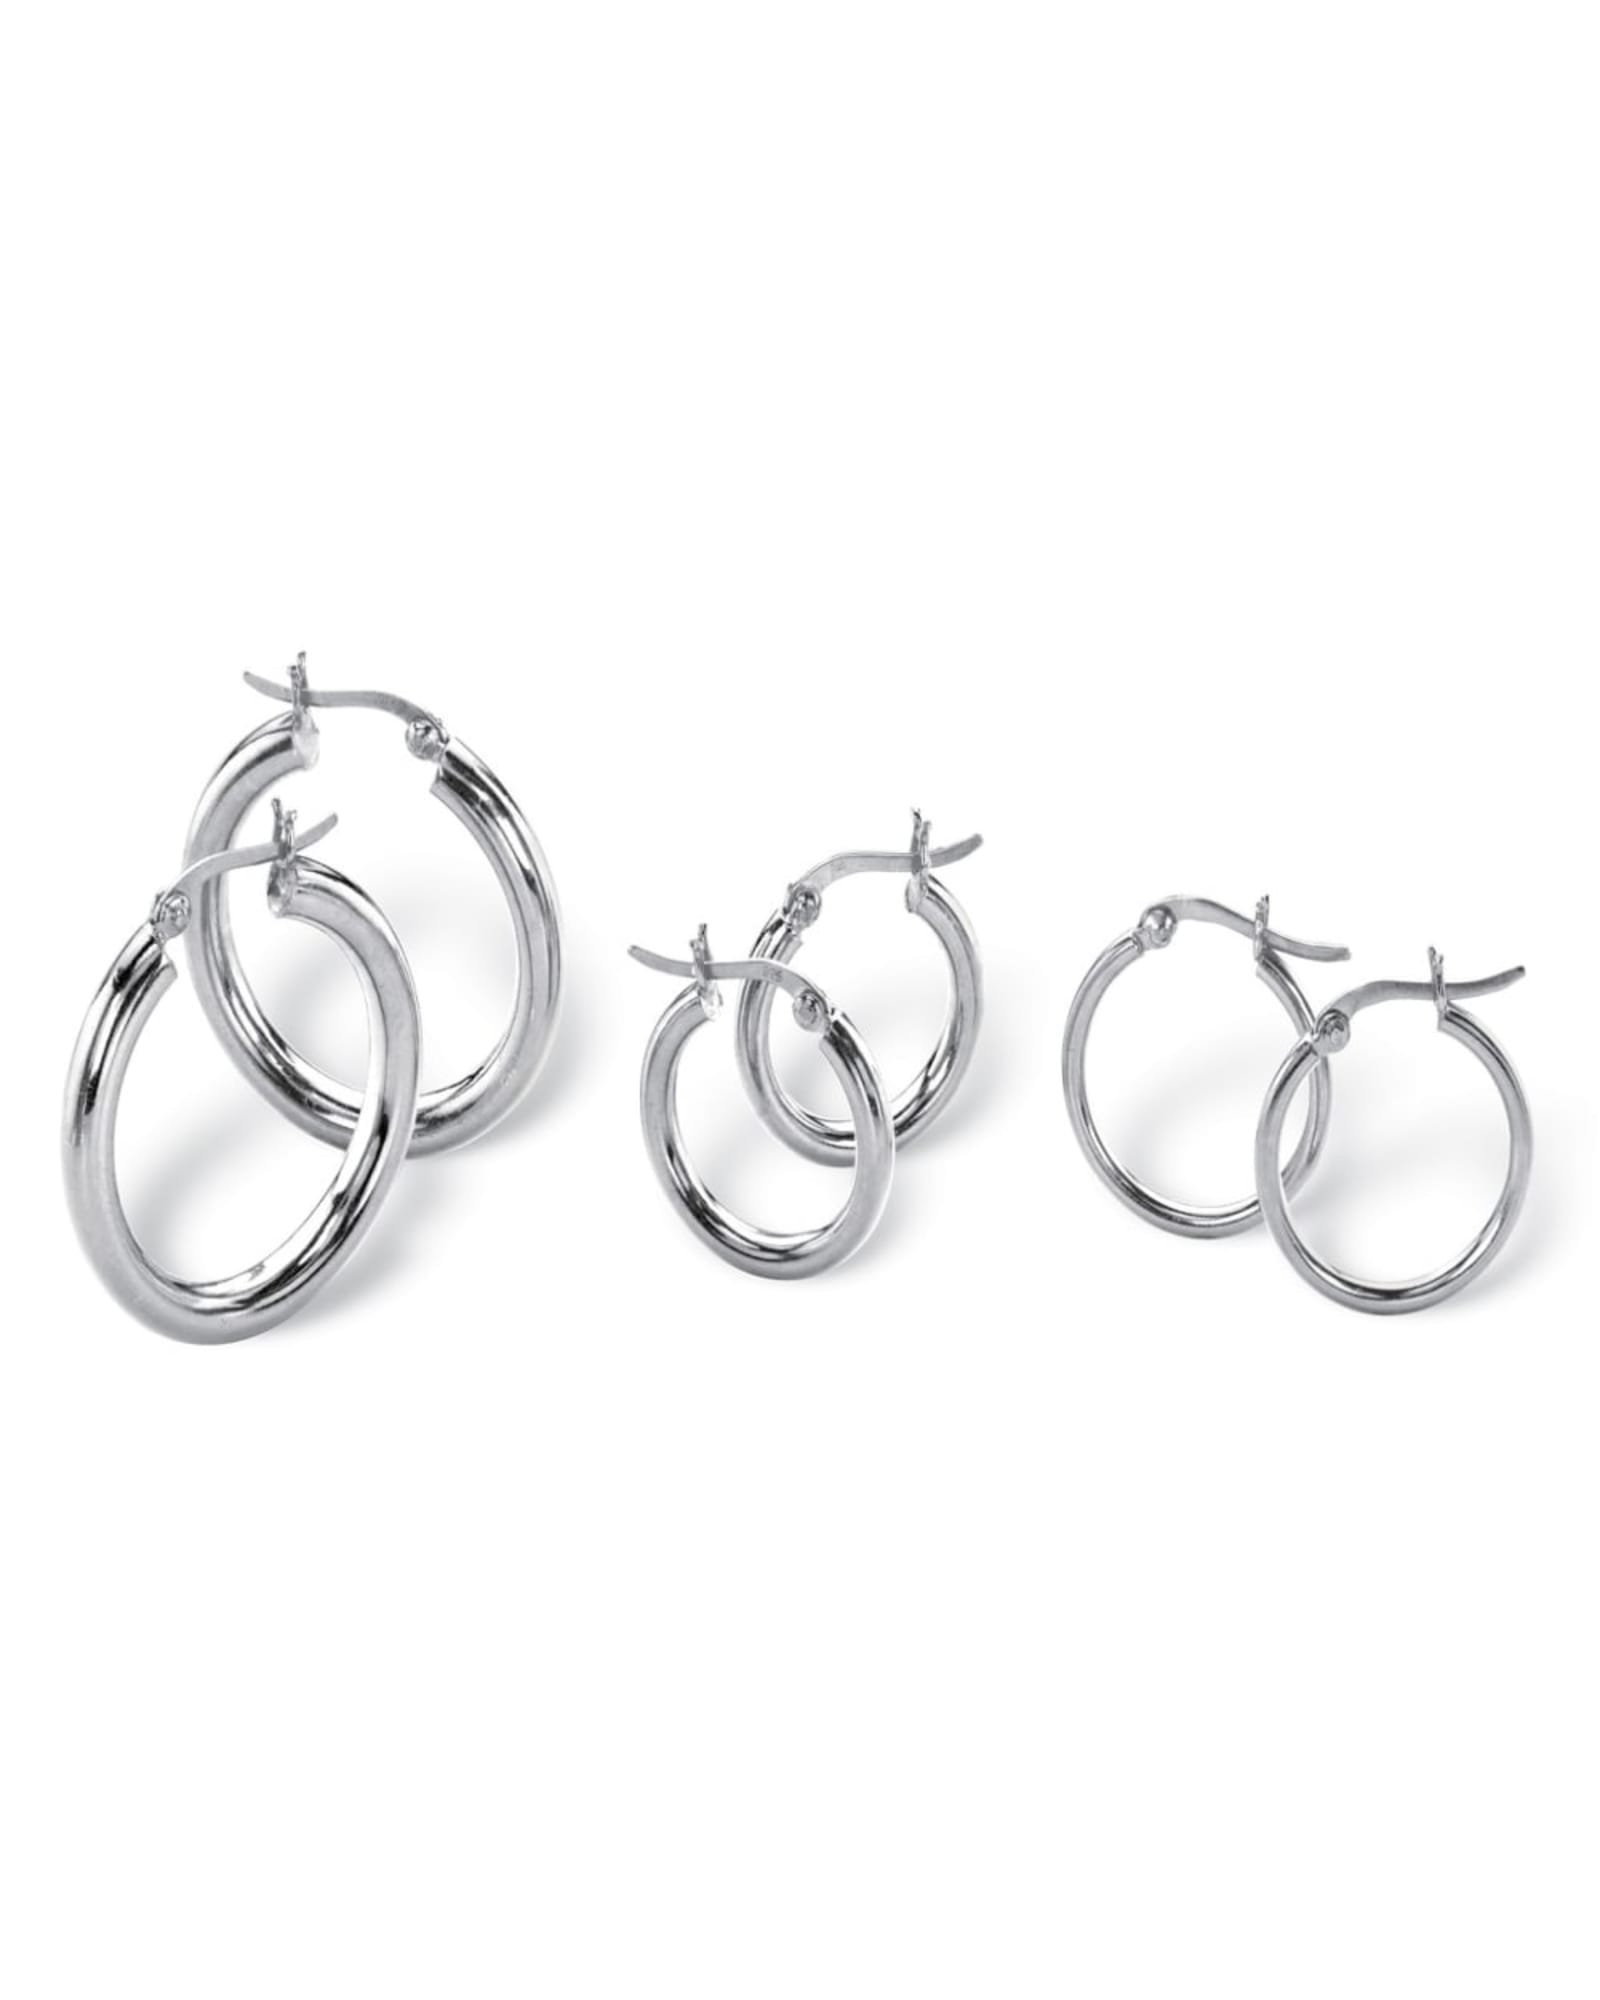 3 Pair Hoop Earrings Set in .925 Sterling Silver | White